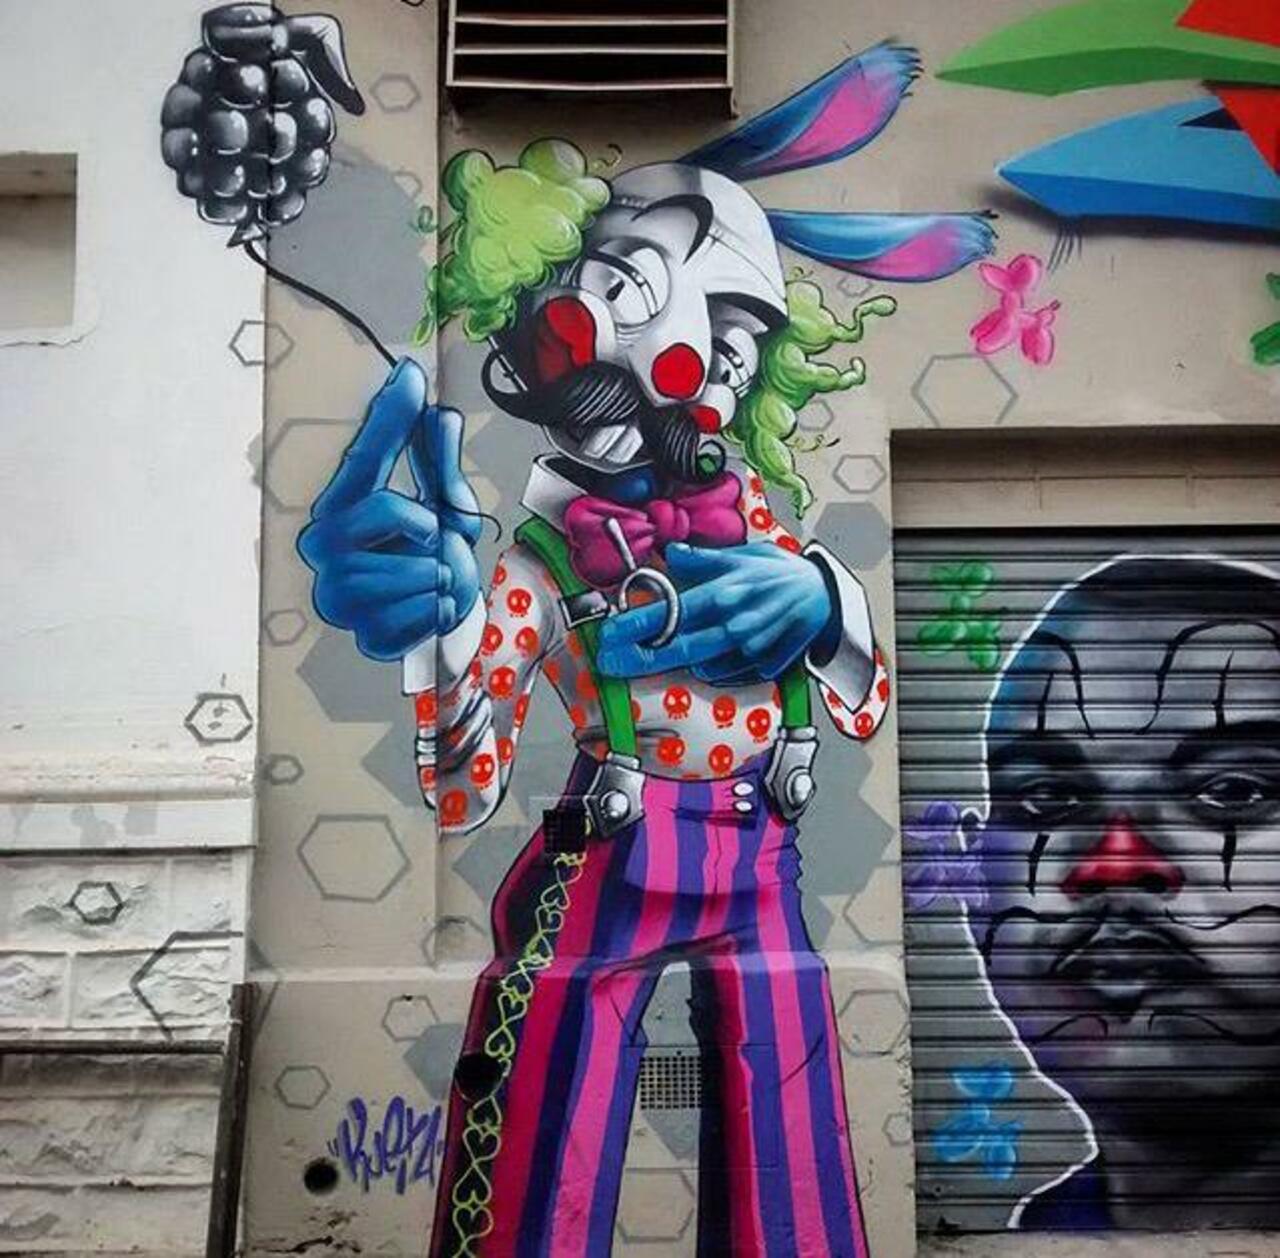 New Street Art by Karen Kueia 

#art #graffiti #mural #streetart http://t.co/C268kliDRu